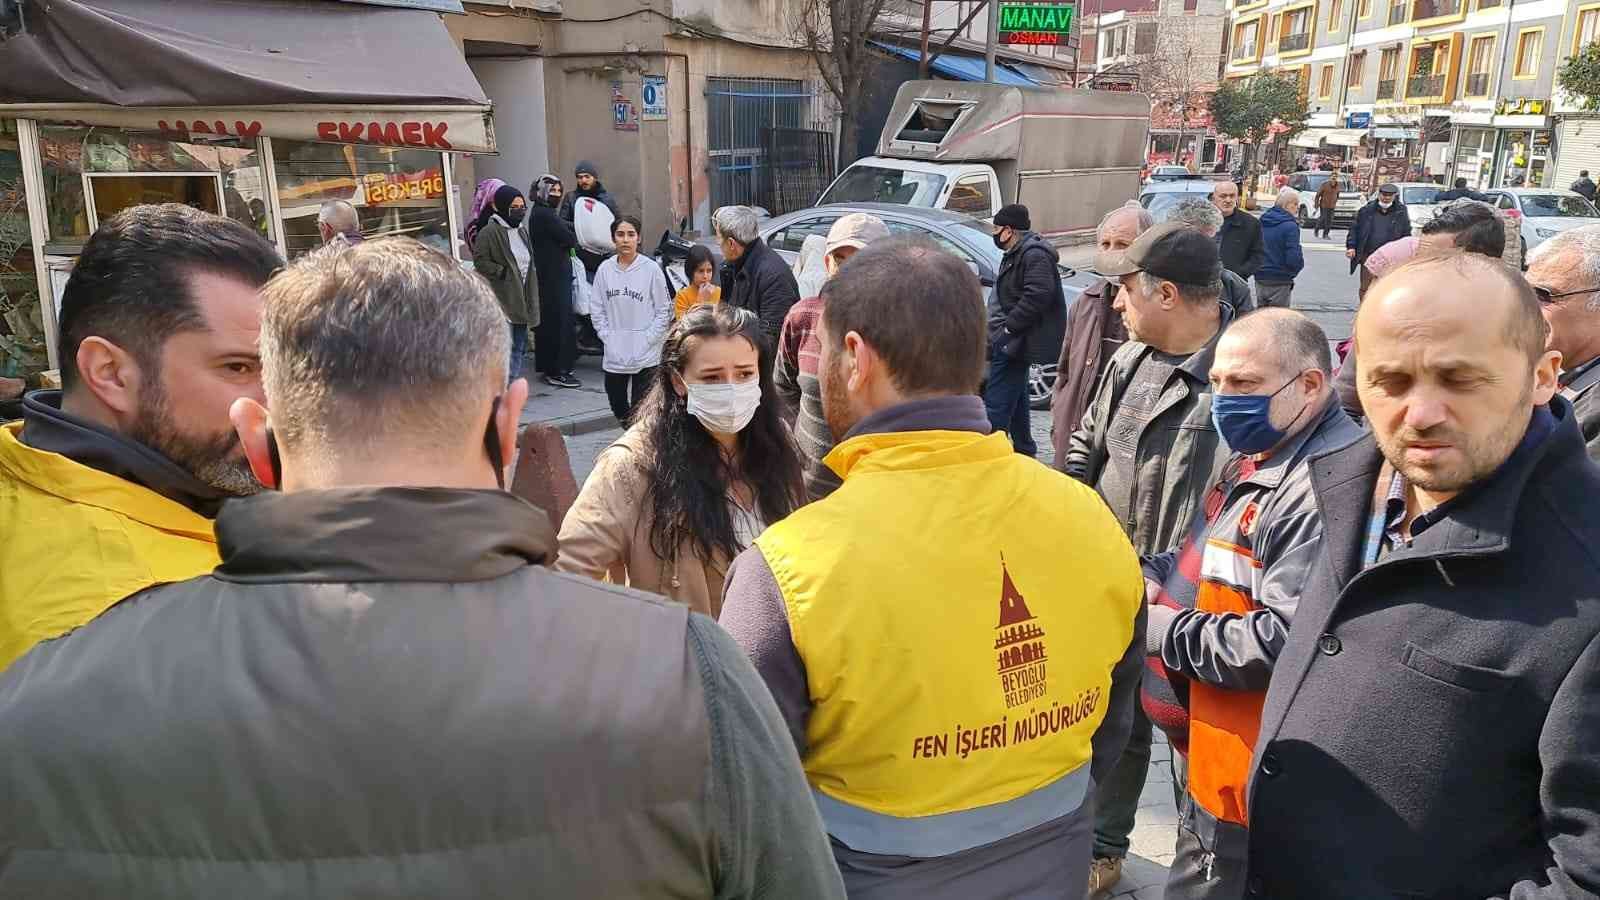 Beyoğlu’nda İETT otobüsü Halk Ekmek büfesine daldı, kazada büfedeki görevli yaralandı. Beyoğlu Belediye Başkanı Haydar Ali Yıldız sosyal medya ...